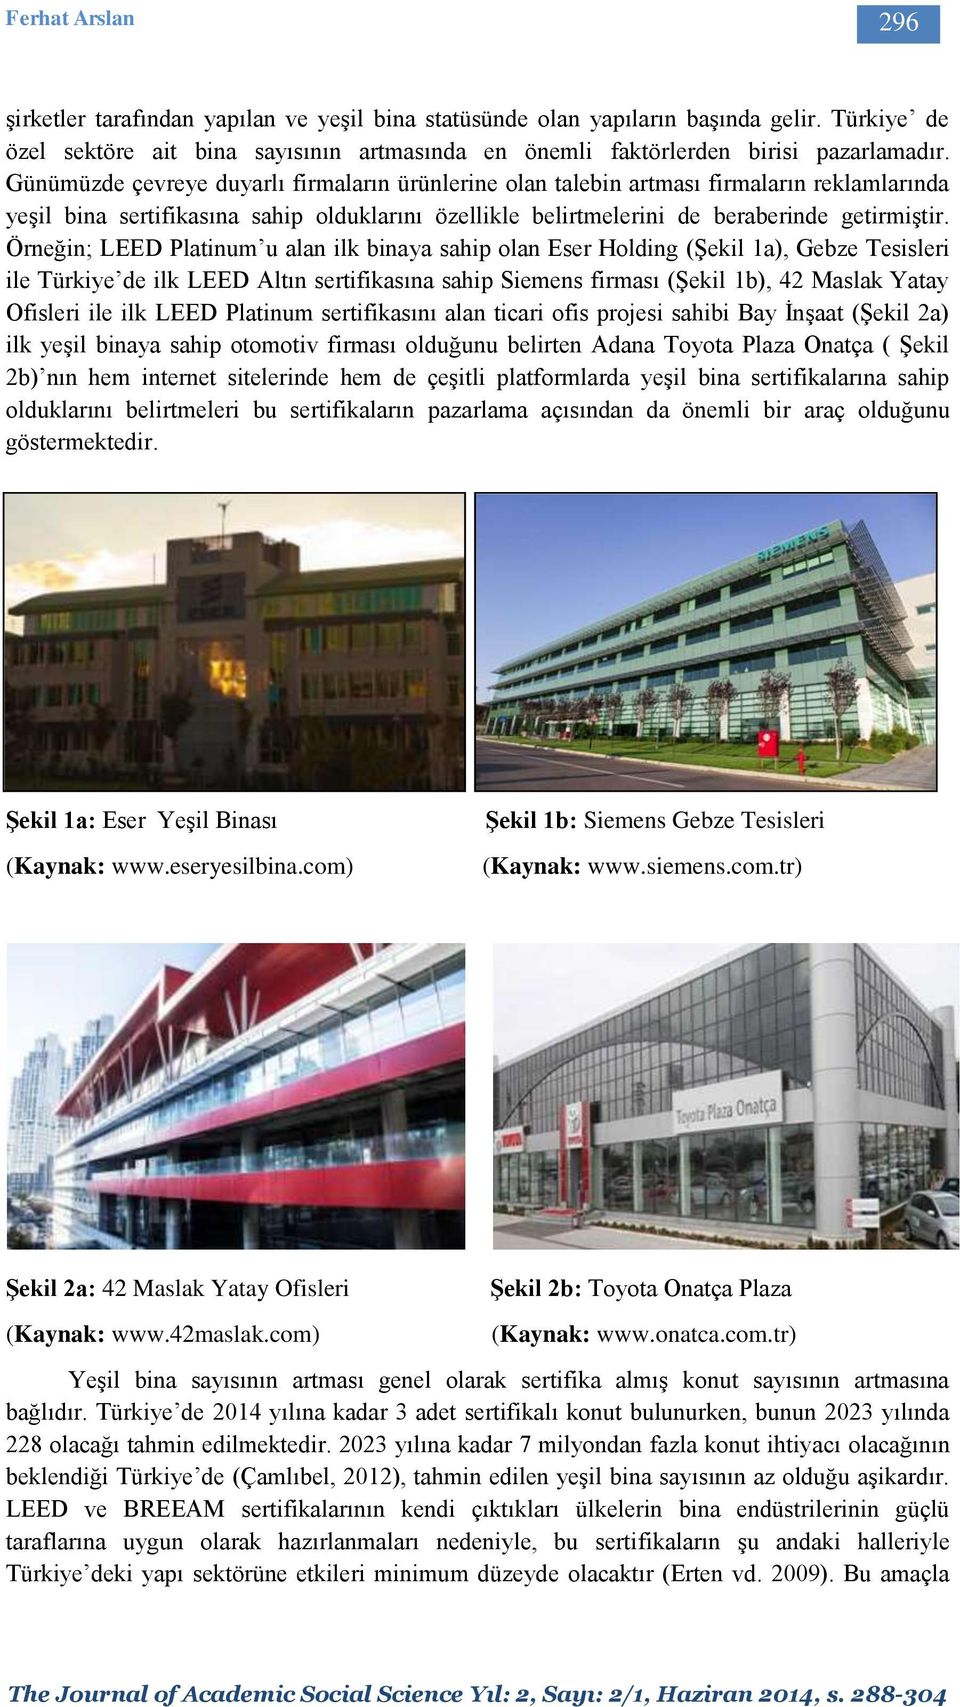 Örneğin; LEED Platinum u alan ilk binaya sahip olan Eser Holding (Şekil 1a), Gebze Tesisleri ile Türkiye de ilk LEED Altın sertifikasına sahip Siemens firması (Şekil 1b), 42 Maslak Yatay Ofisleri ile